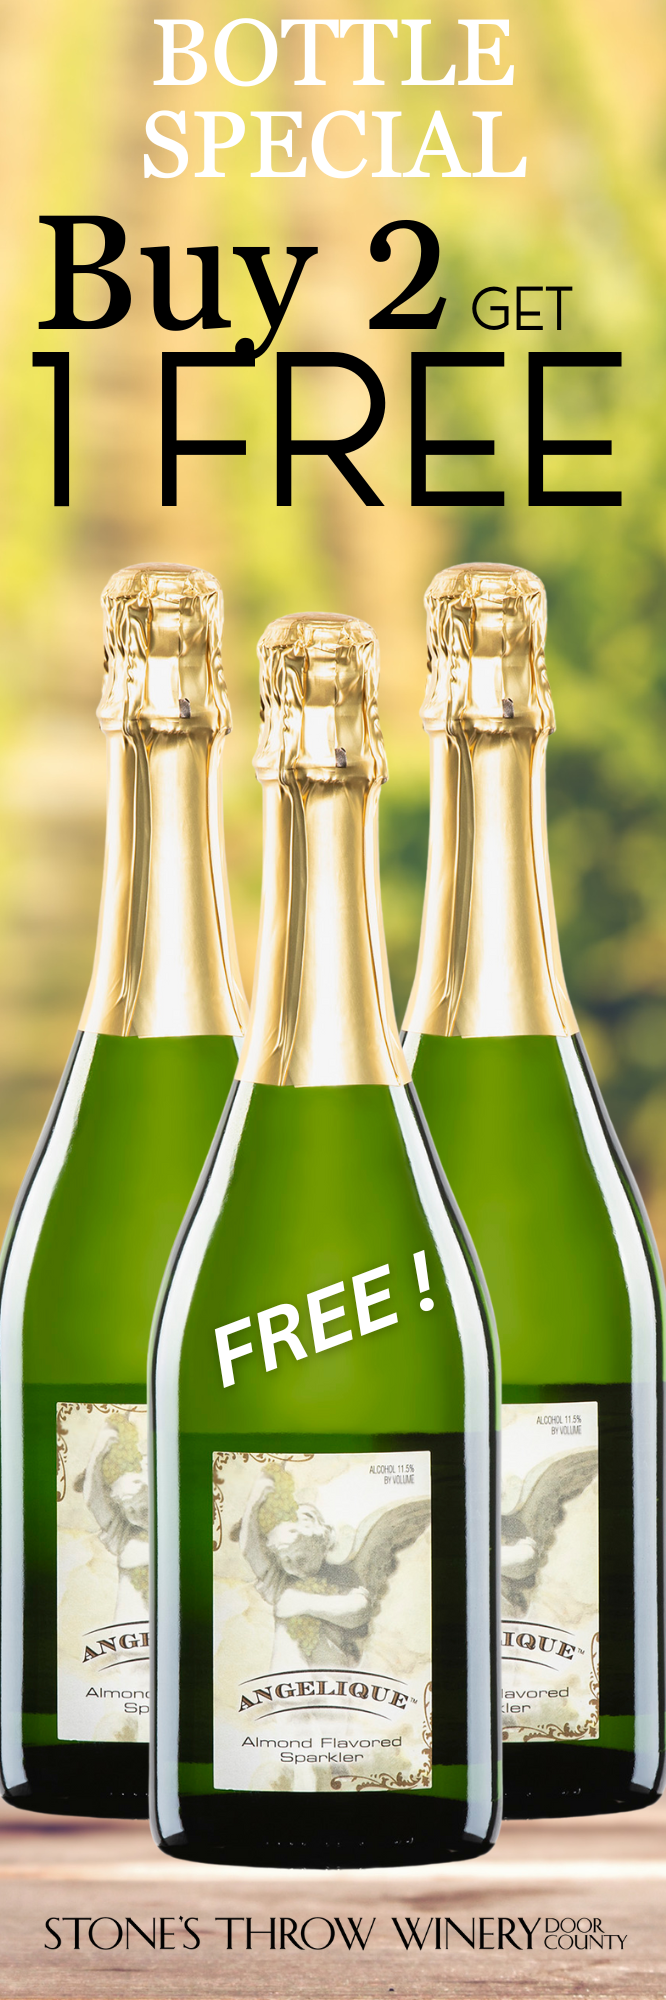 Product Image for Angelique 2021 Buy 2 Bottles Get 1 Bottle FREE!